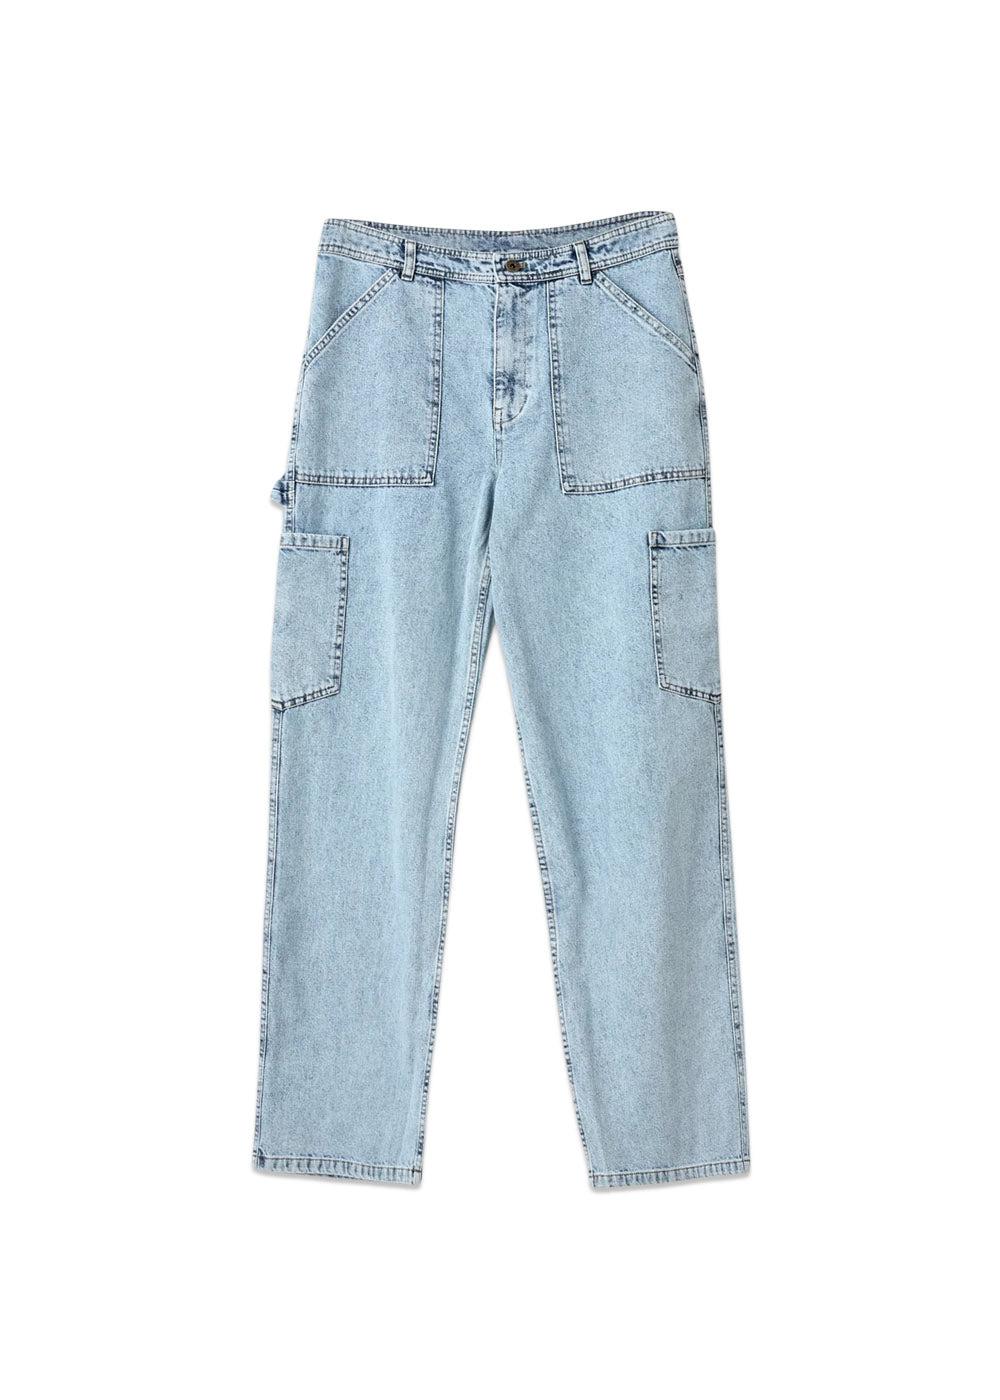 H2O Fagerholts Only Bad Jeans - Light Blue Denim. Køb bukser her.